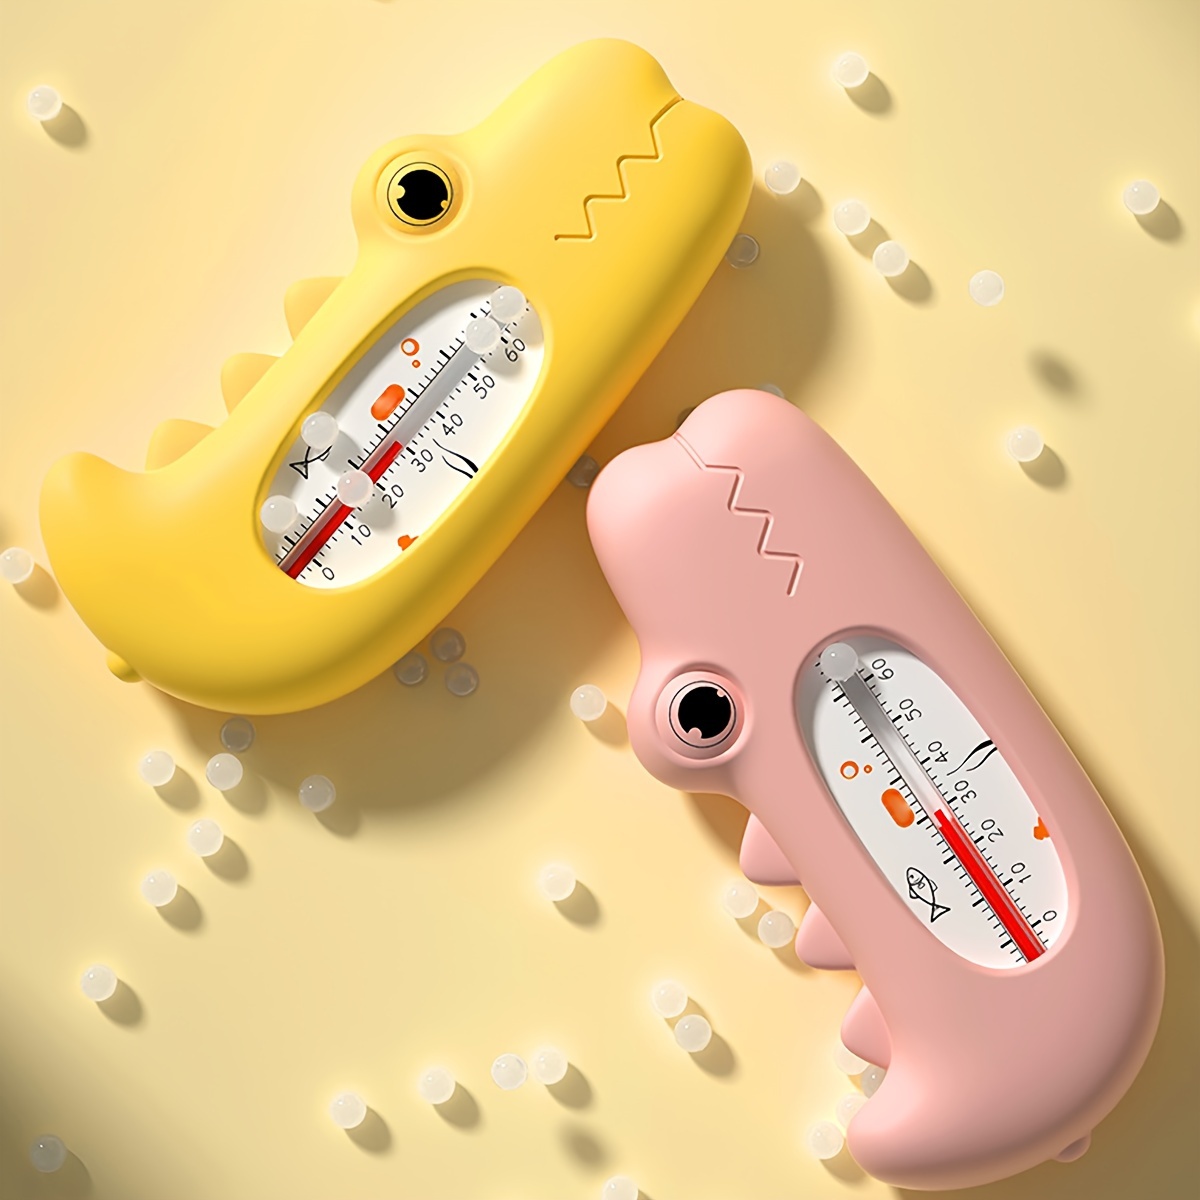 Termómetro de baño de dibujos animados para bebé, medidor de temperatura  del agua, juguete de baño